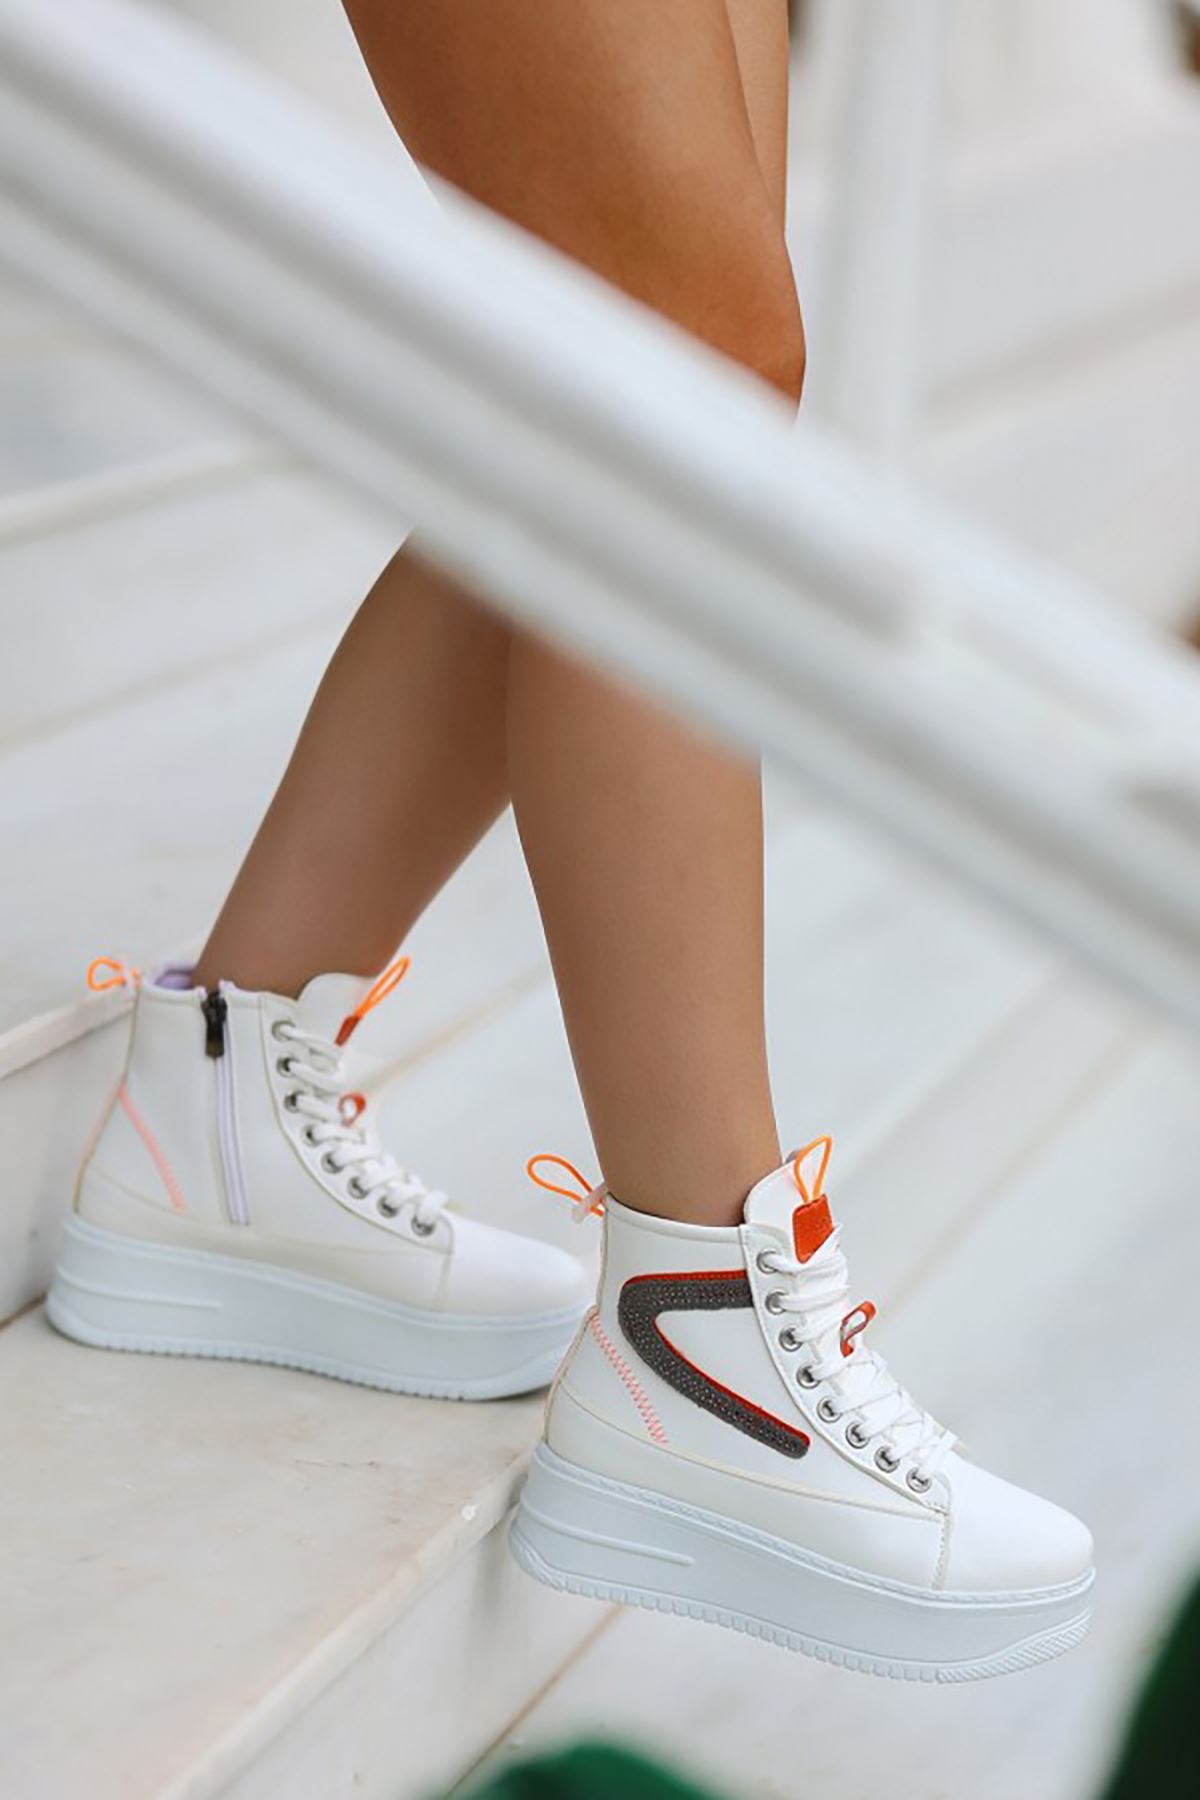 Mida Shoes ERBPone Beyaz Turuncu Detaylı Deri Bağcıklı Kadın Spor Bot